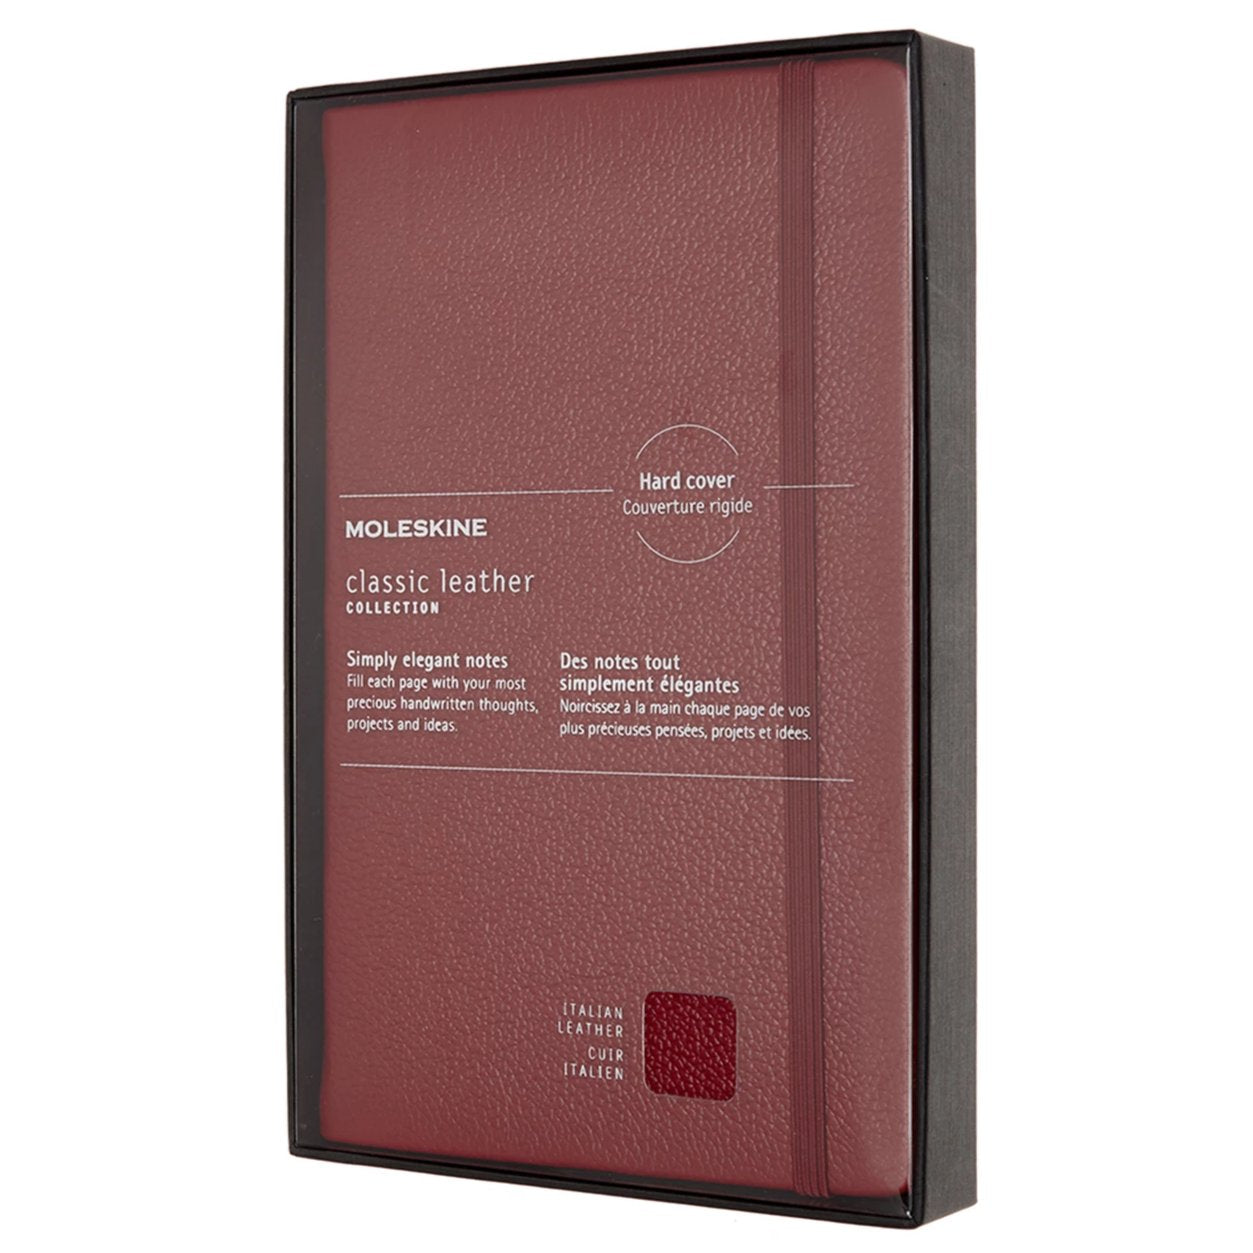 Caderno Clássico em Couro Premium - Vermelho